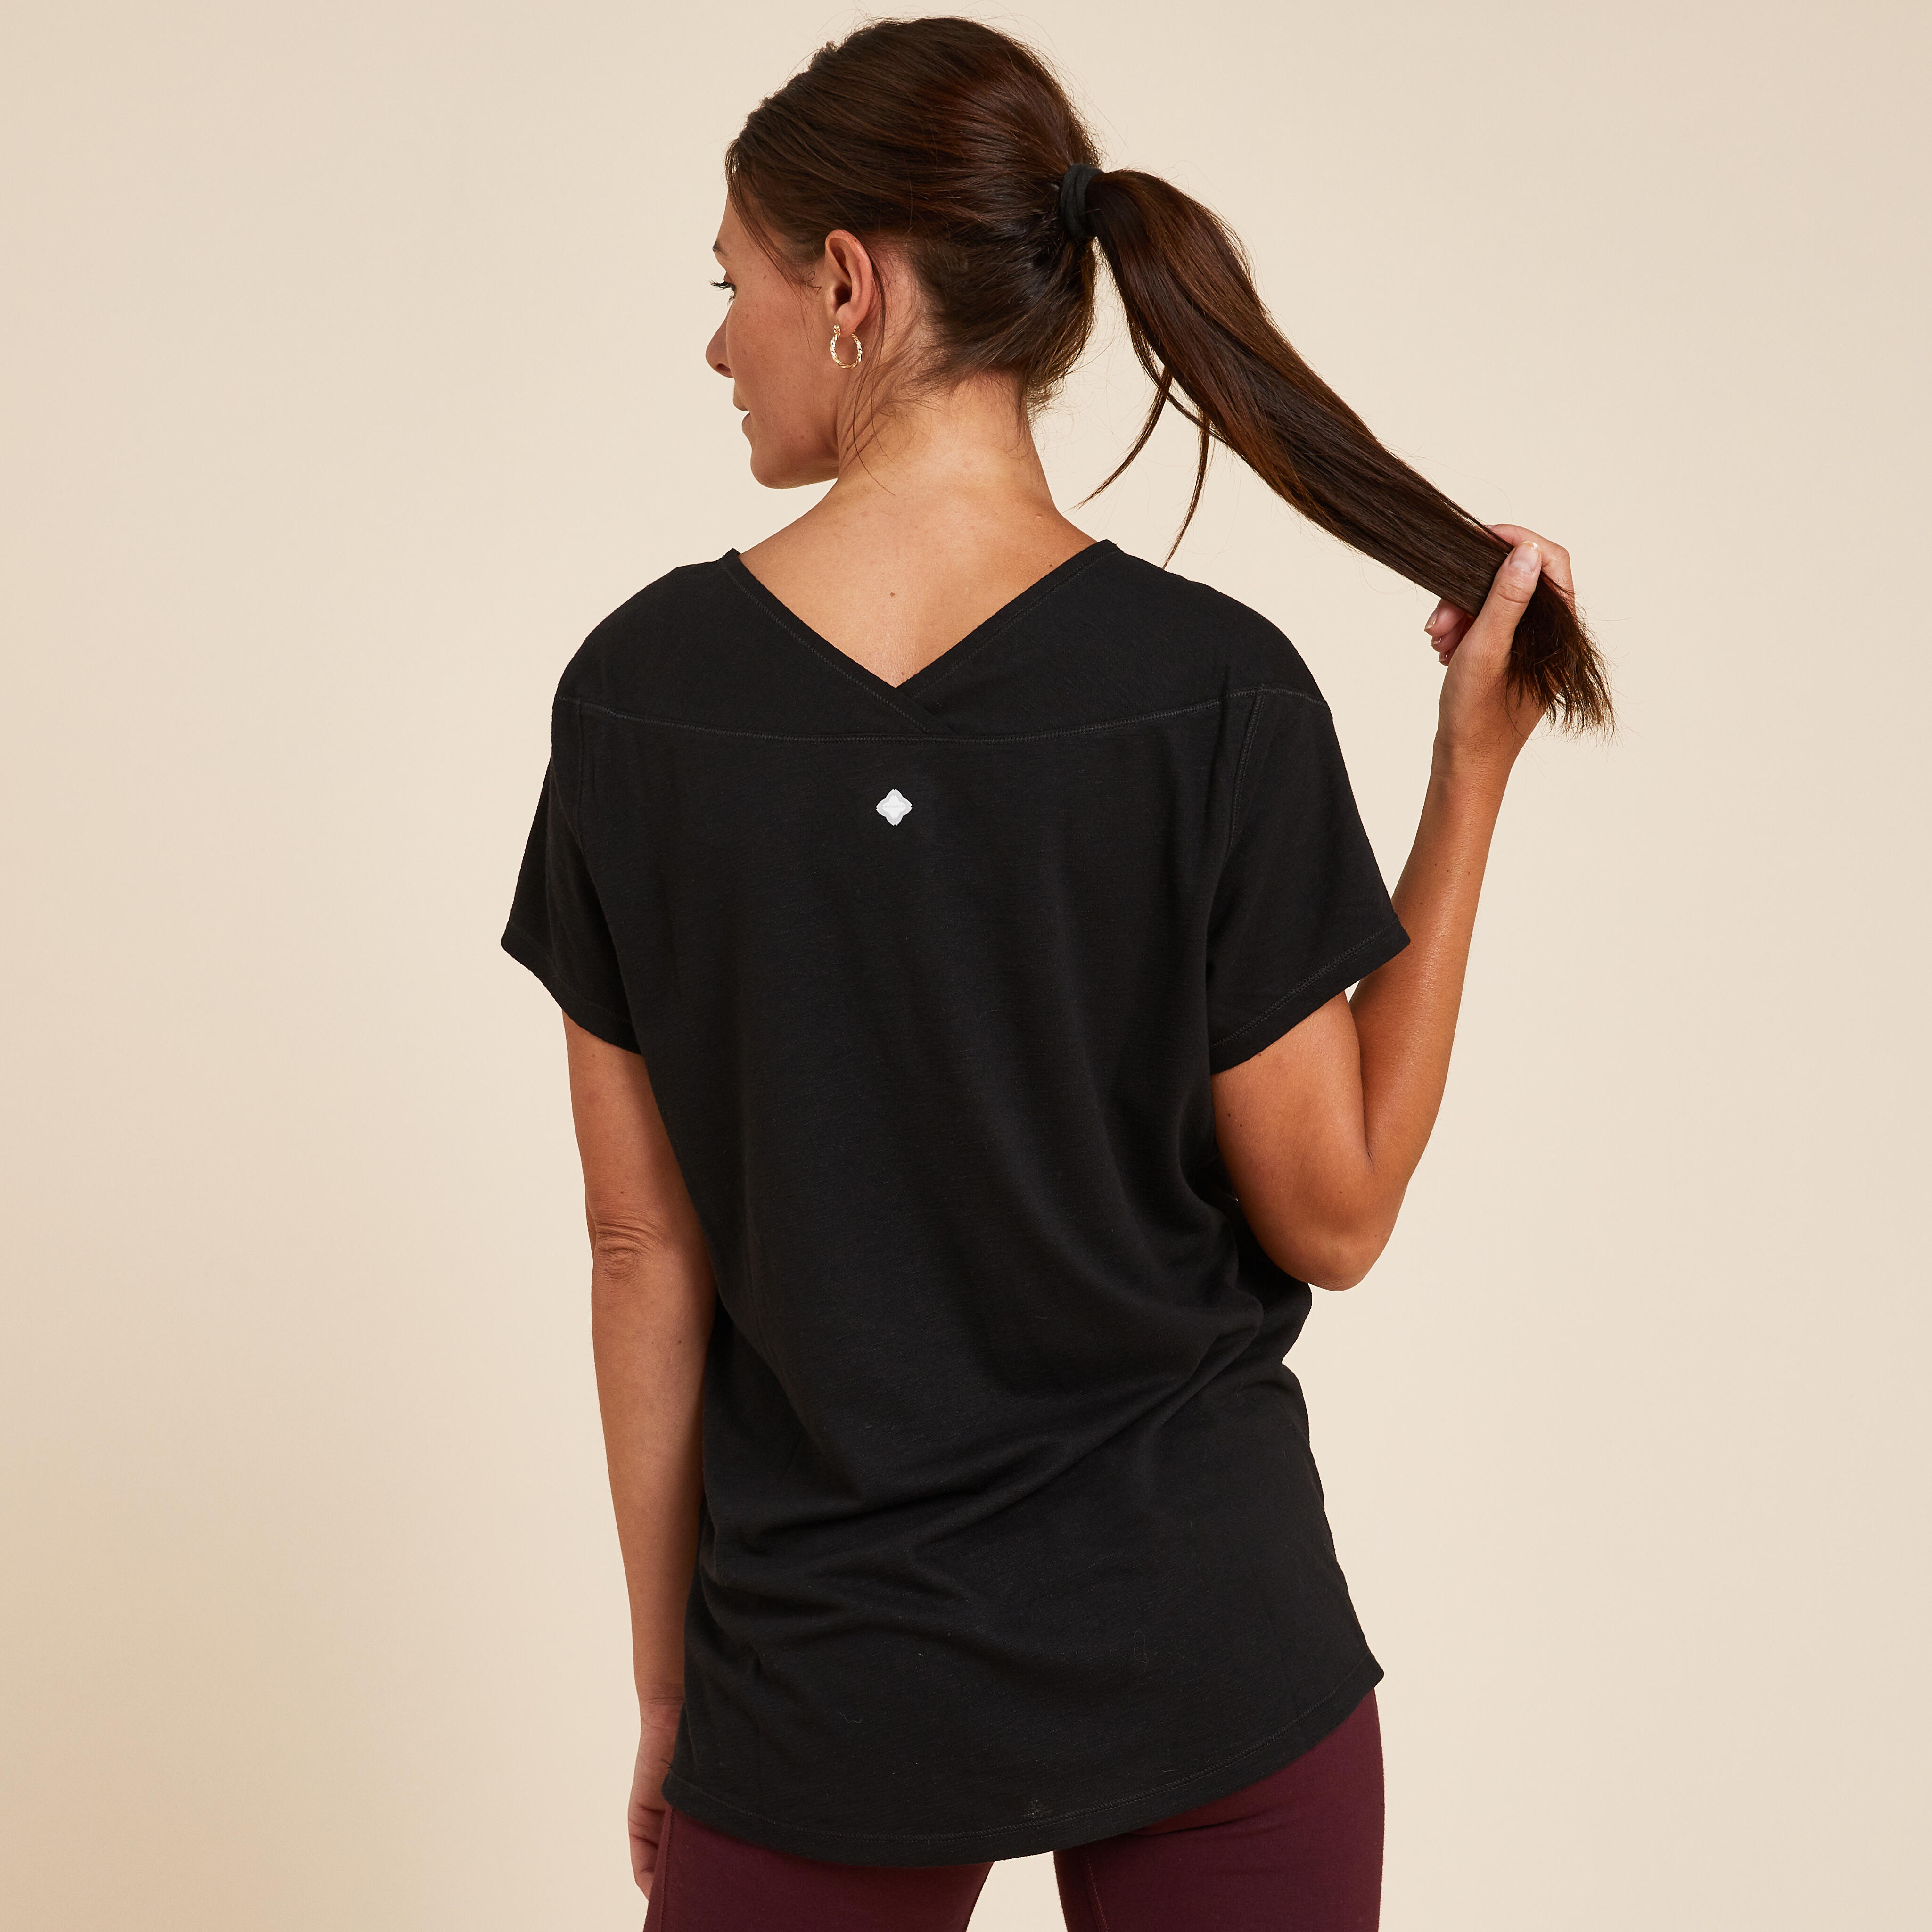 Women Plain Long Sleeve Gym Running Sports T Shirt Tee - Navy blue -  Decathlon